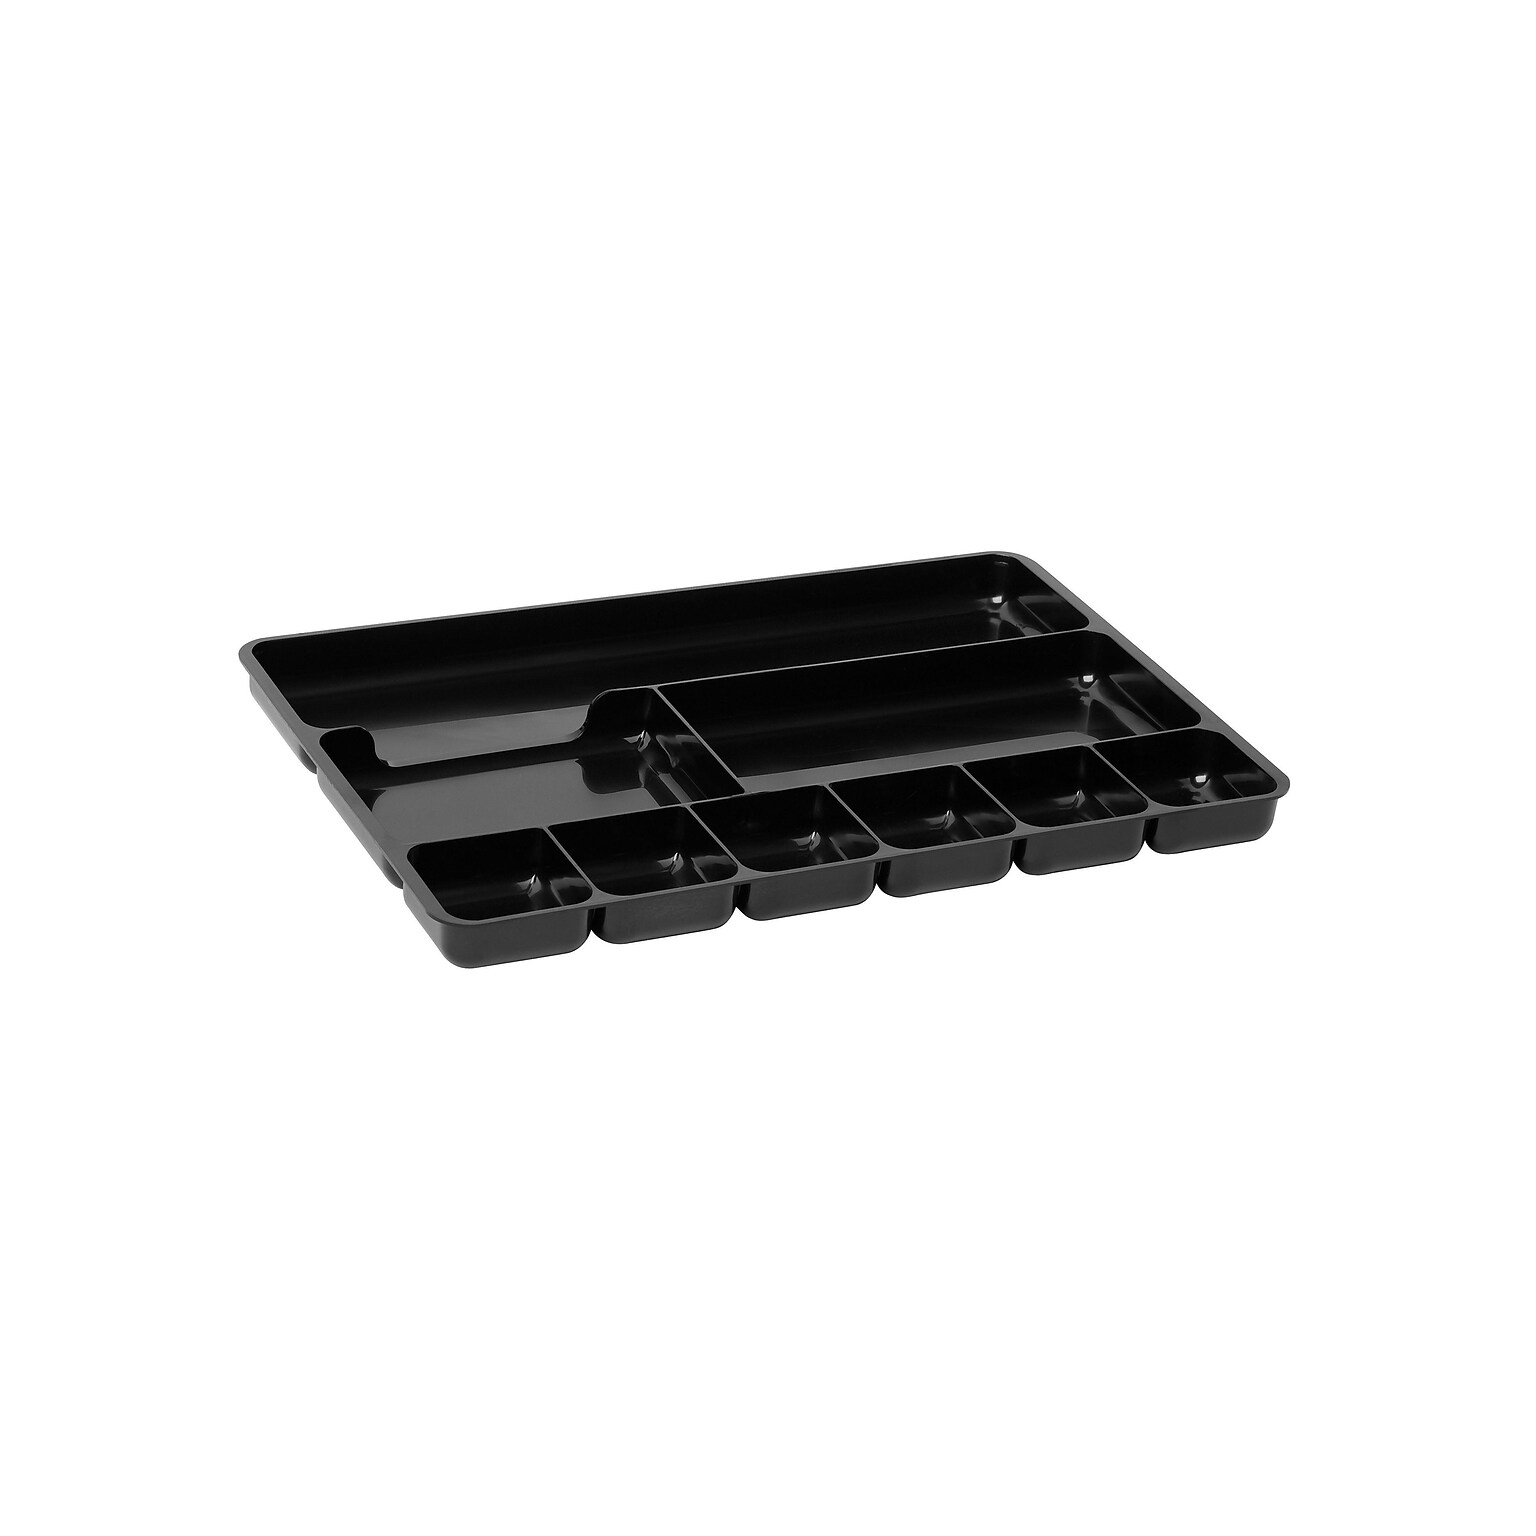 Rubbermaid Regeneration 9 Compartment Plastic Accessory Tray, Black (45706)